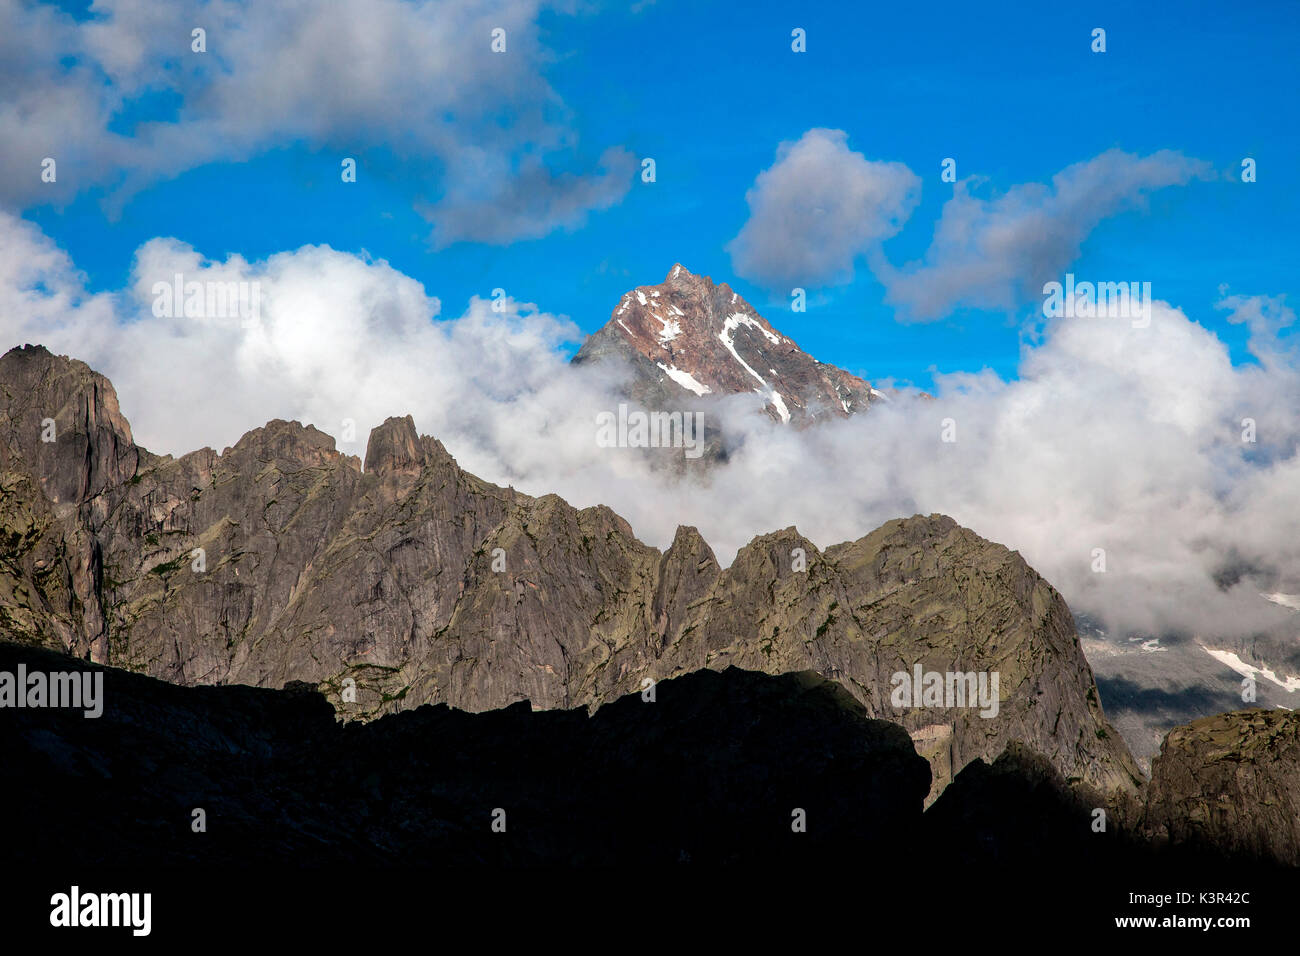 Vista del Monte Disgrazia rodeado por crestas graníticas. Valmasino Valtellina, Lombardía, Italia Europa Foto de stock